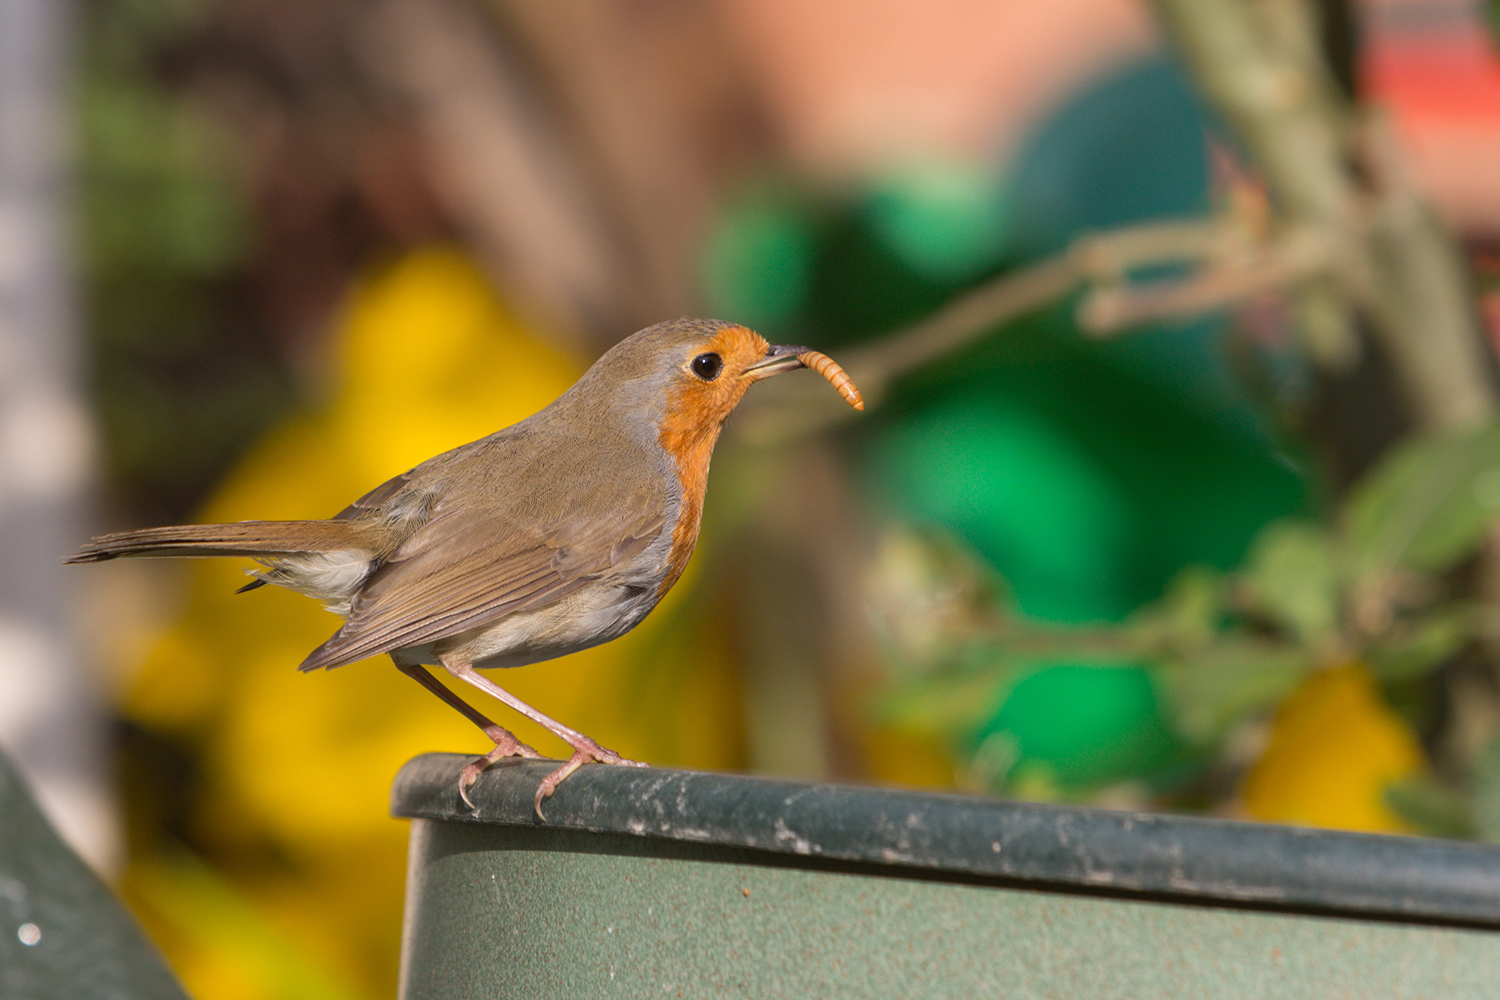 Comment attirer les oiseaux au jardin ? 3 astuces faciles